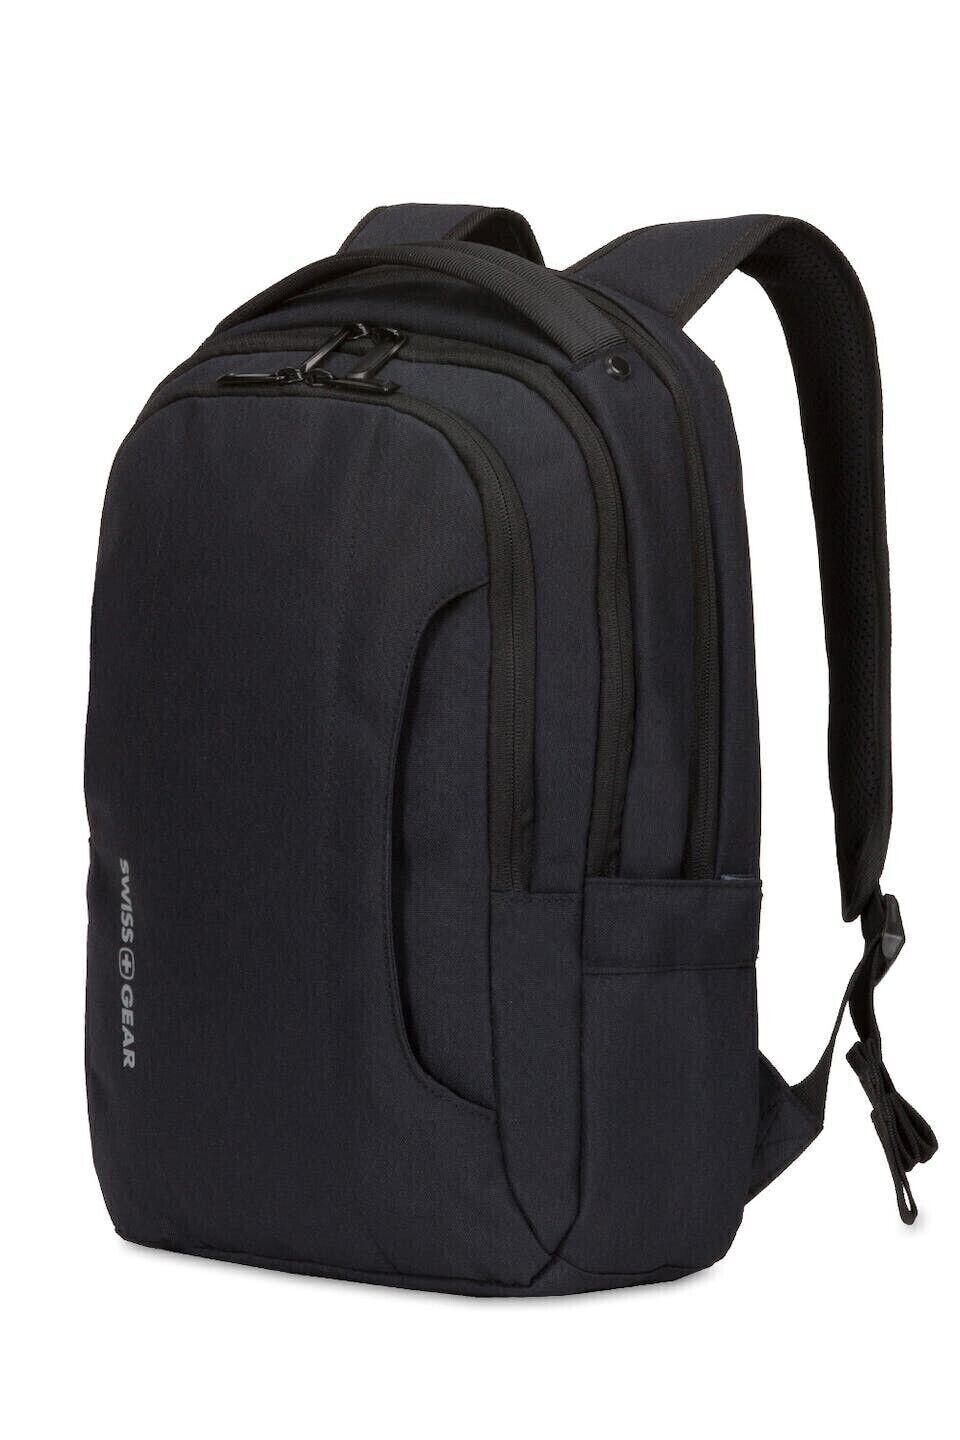 SwissGear TSA  Laptop Backpack, Black